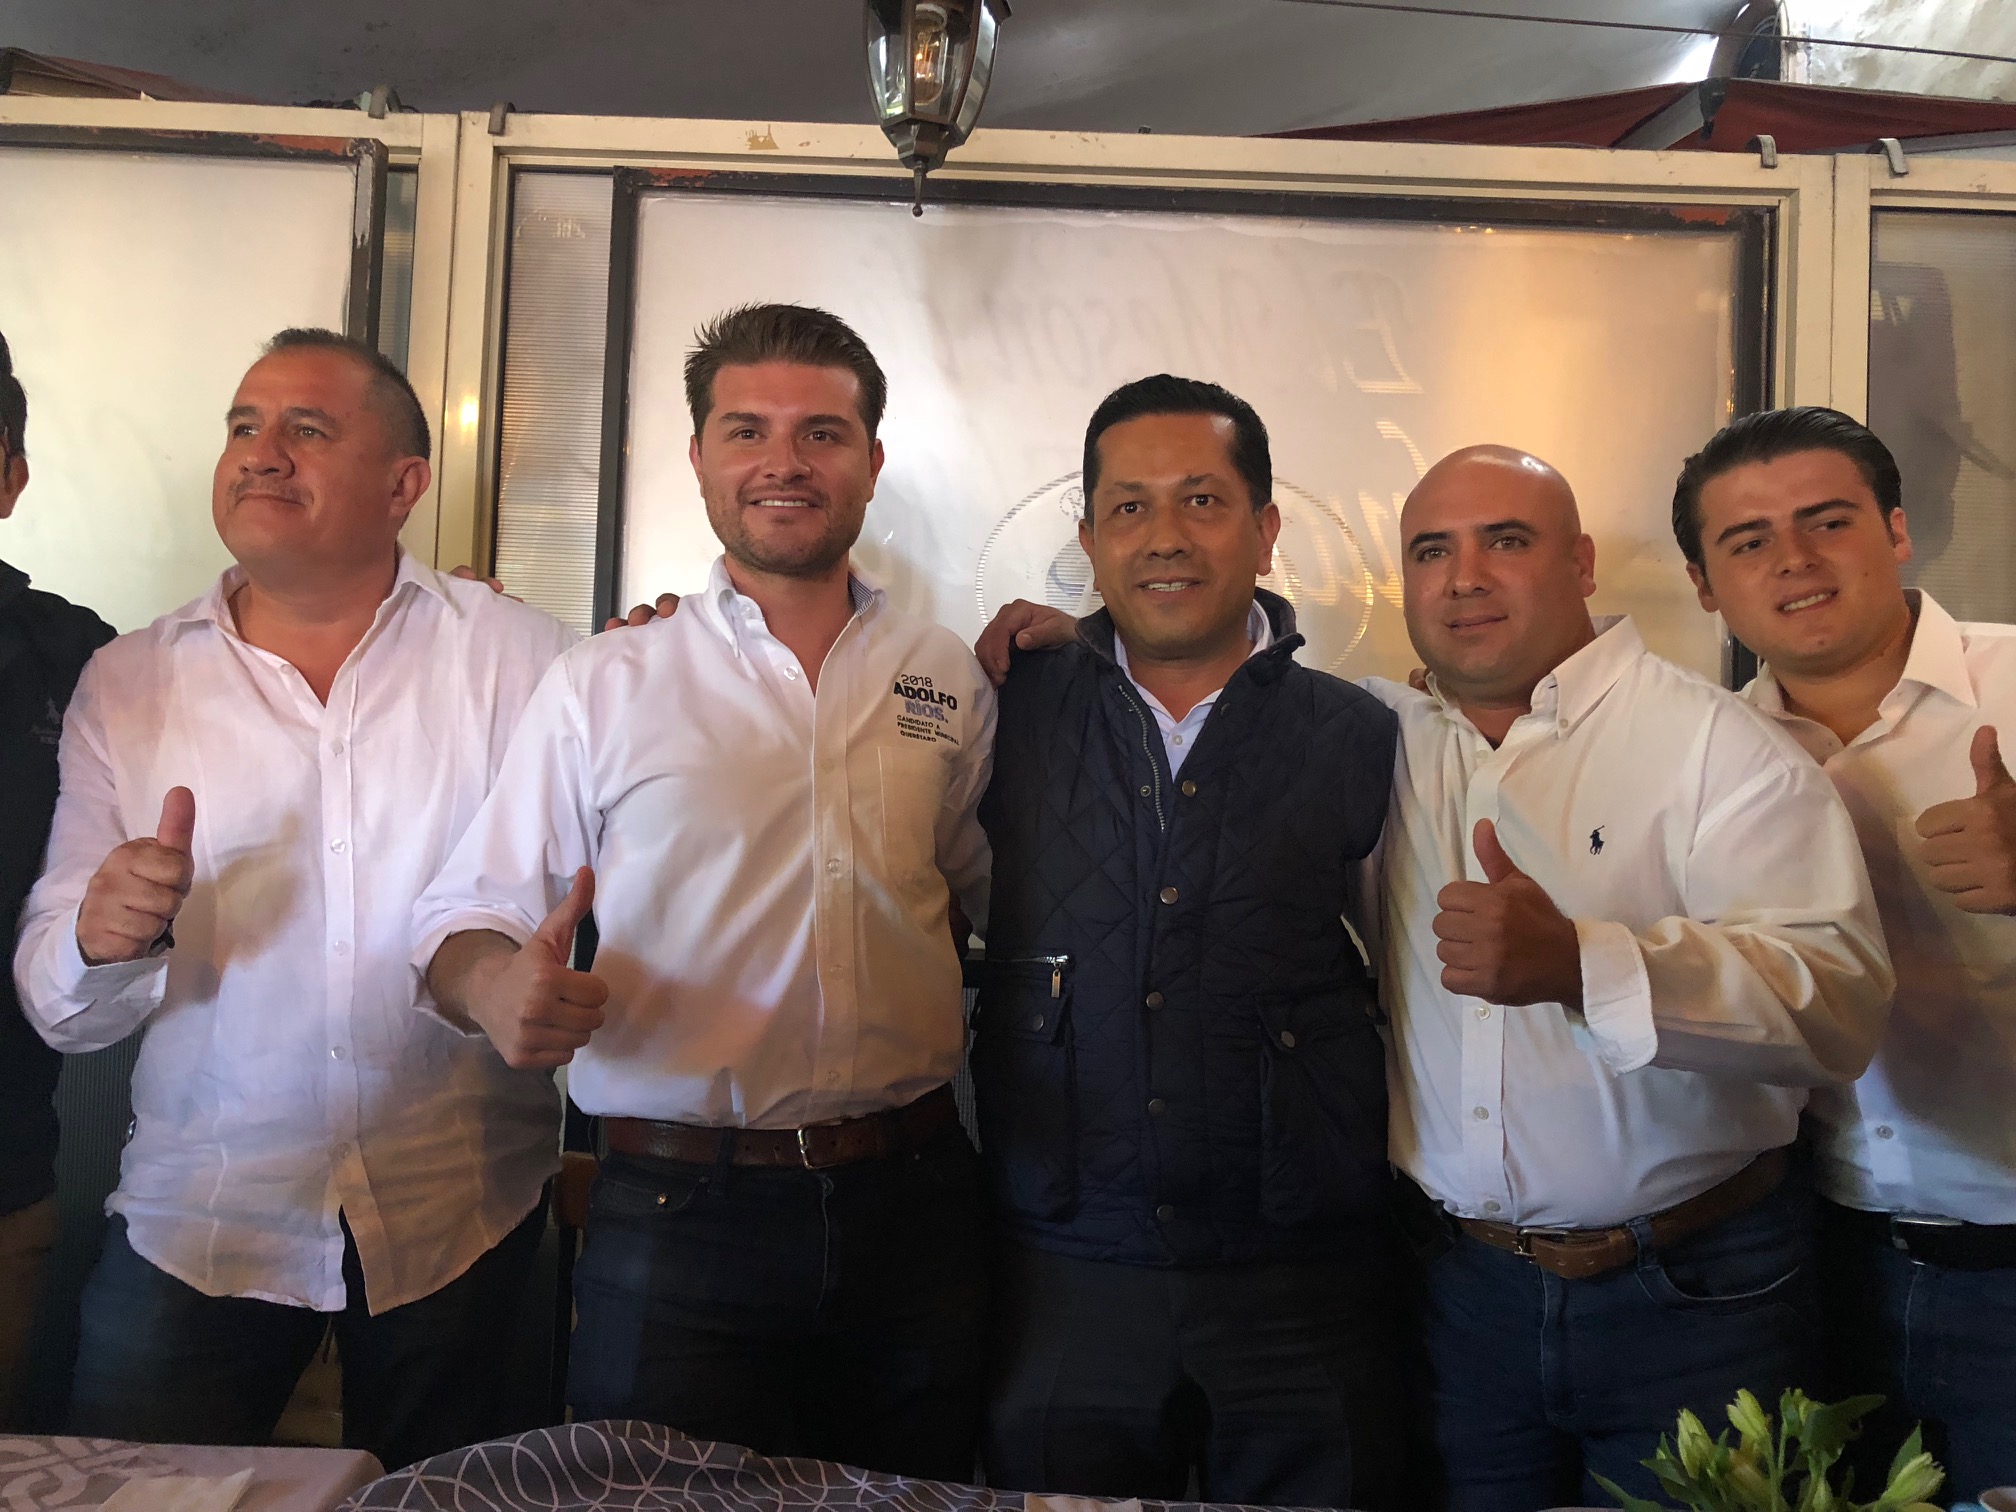  Grupo de campaña de “El Bronco” en Querétaro se suma a proyecto de Adolfo Ríos